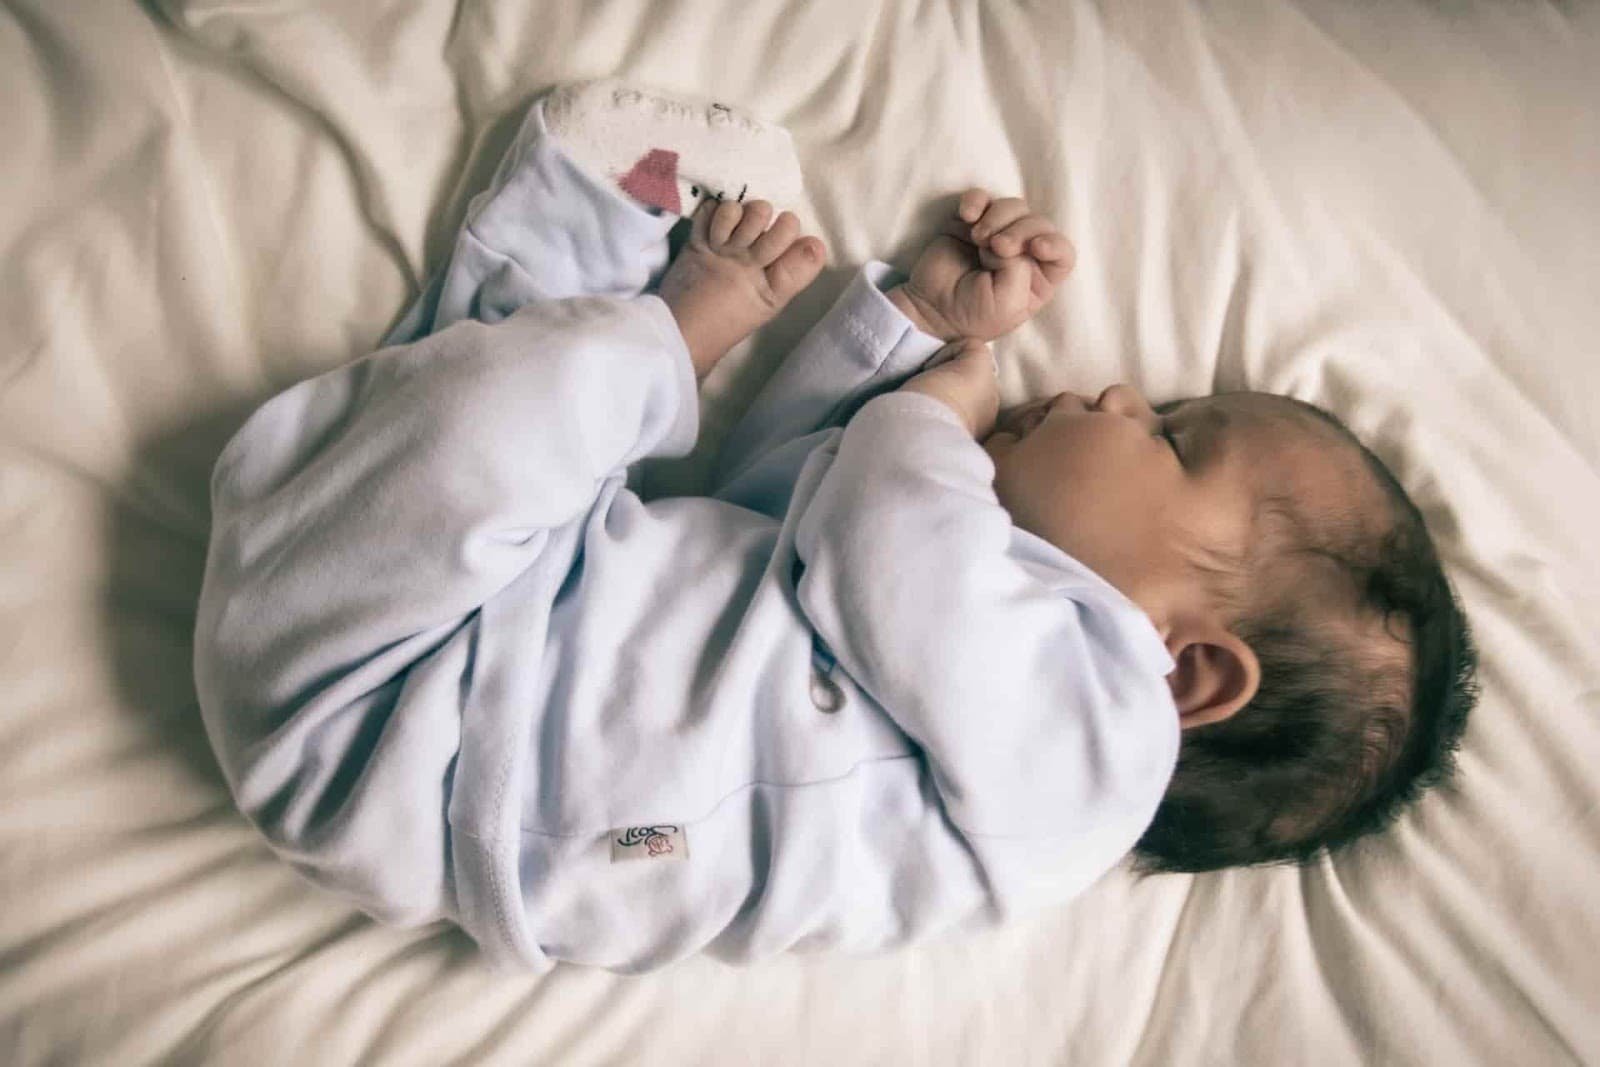 Le bruit blanc d'un sèche-cheveux aide-t-il un bébé à s'endormir ?